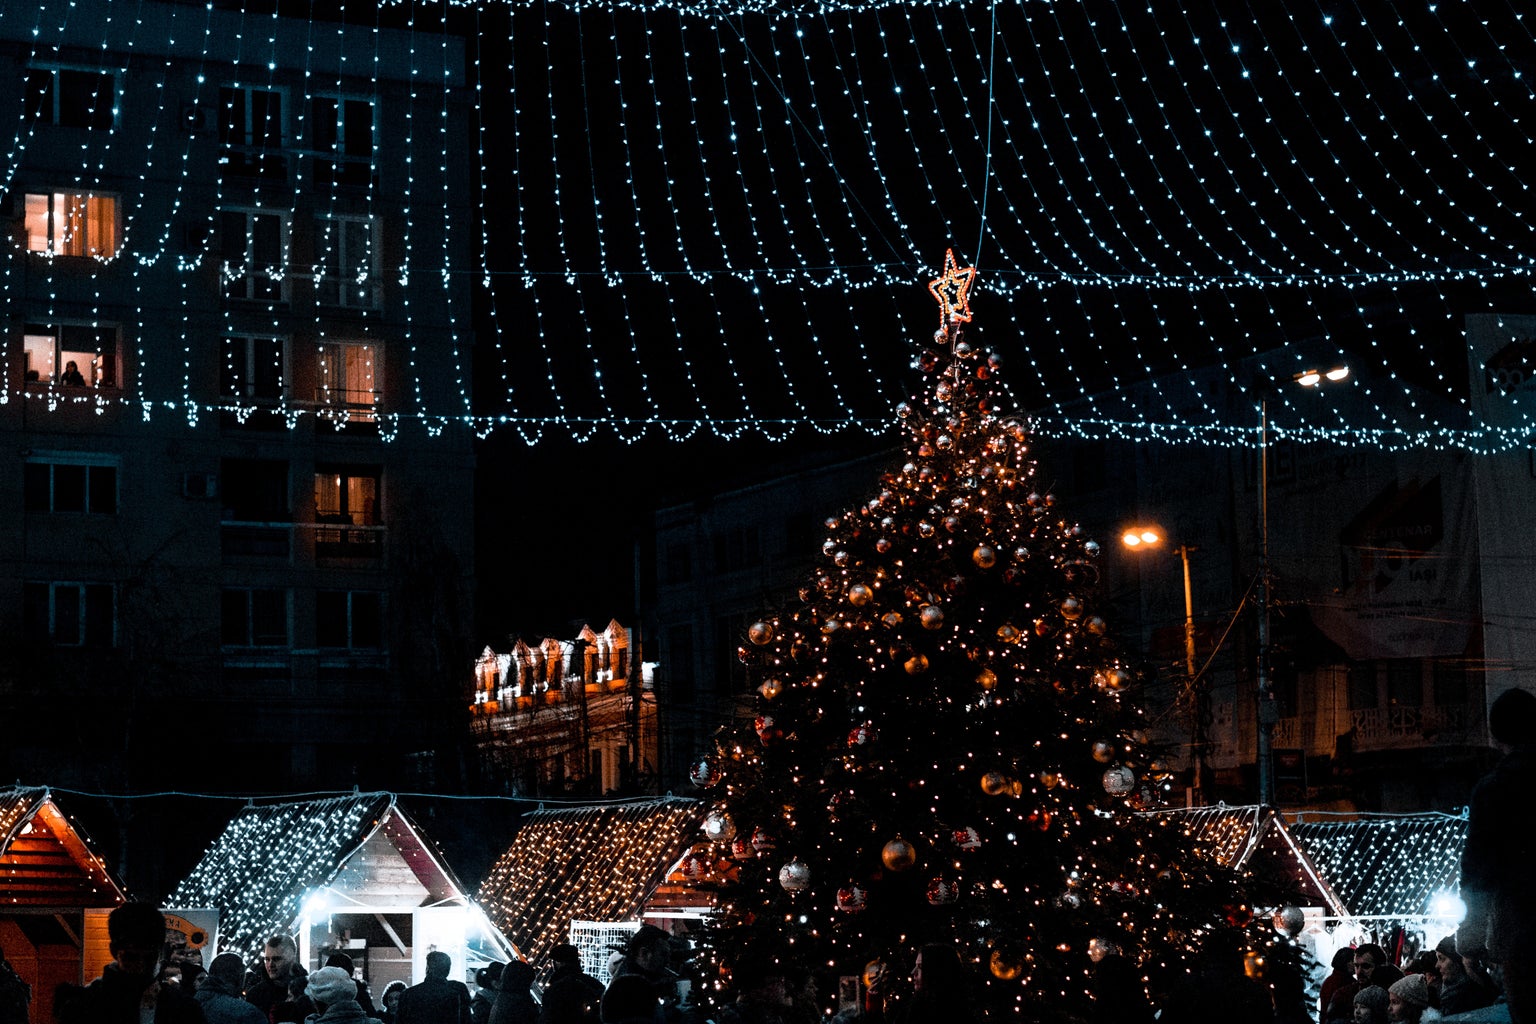 Christmas tree and lights over a Christmas market